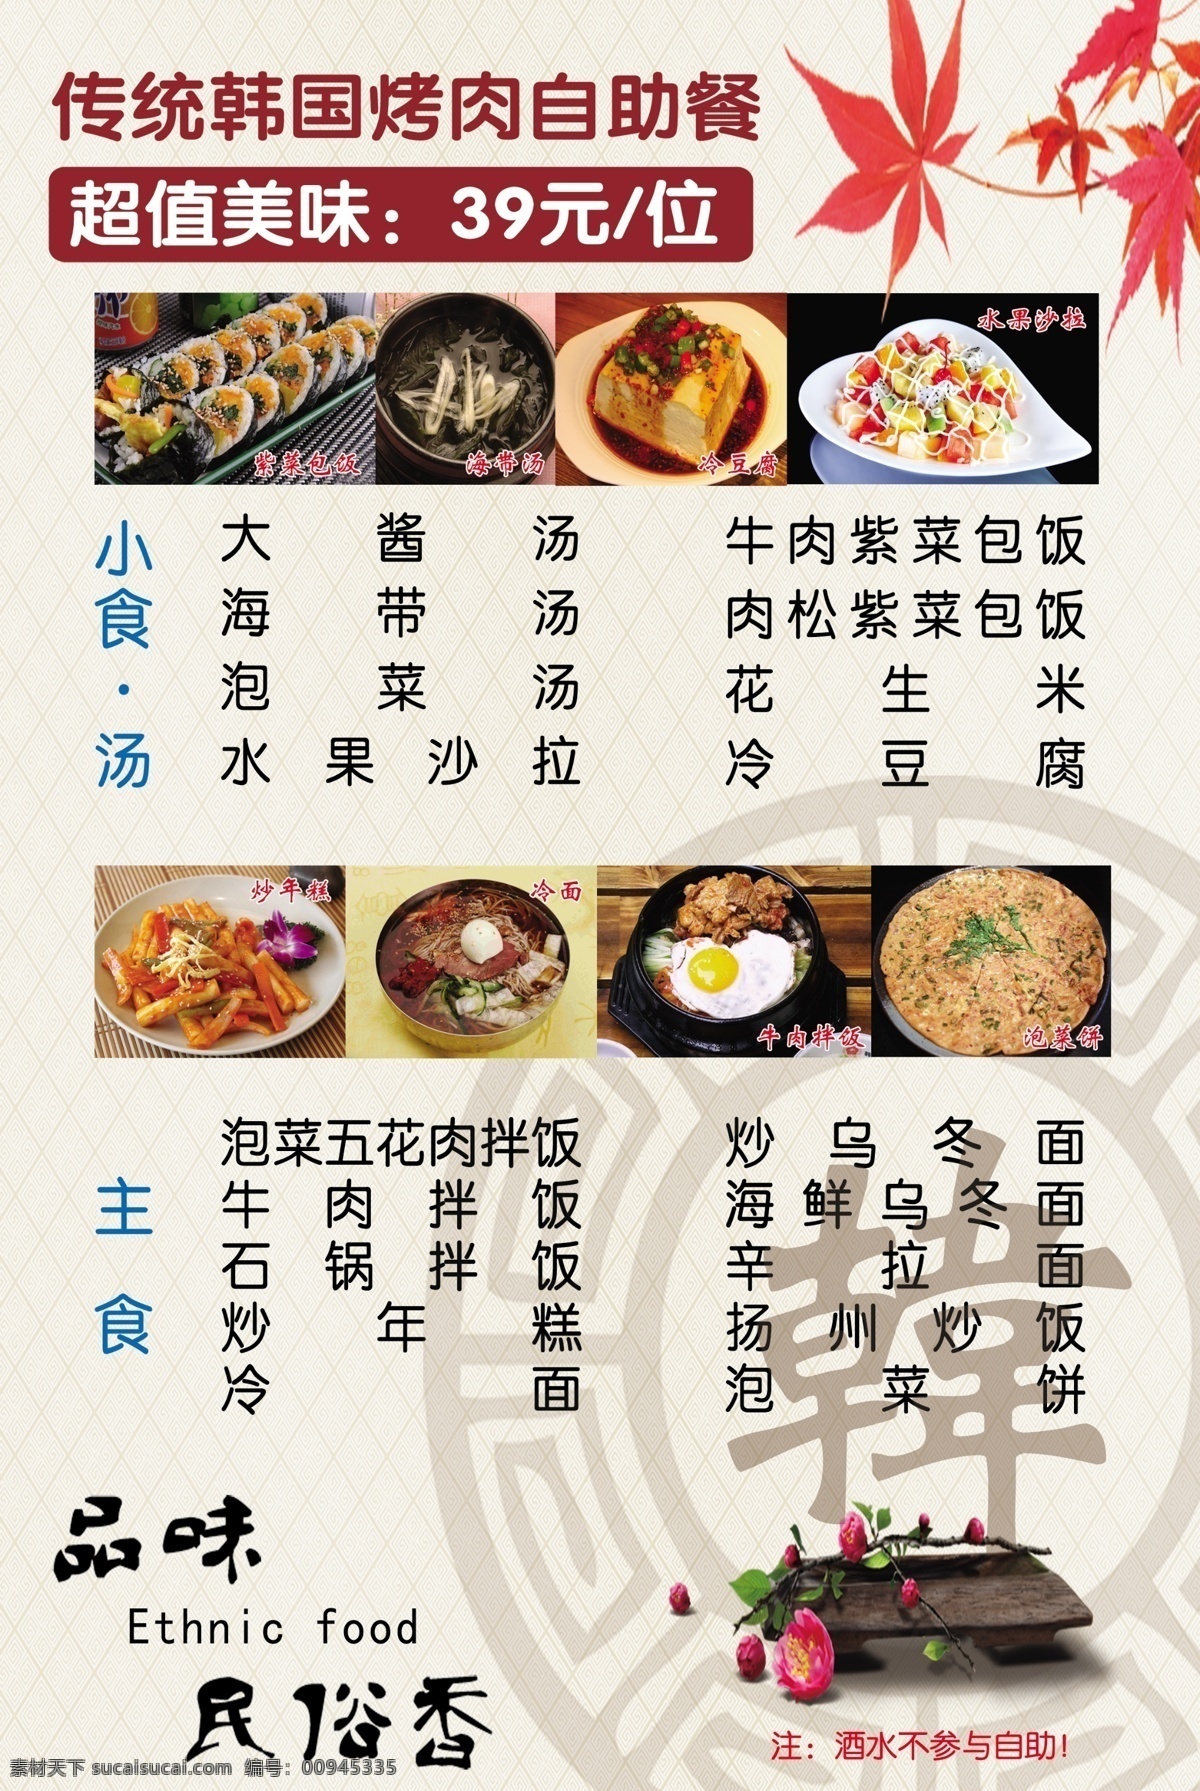 韩国 料理 菜单 菜单设计 韩国菜单 韩国料理 自助菜单设计 高档菜单设计 psd源文件